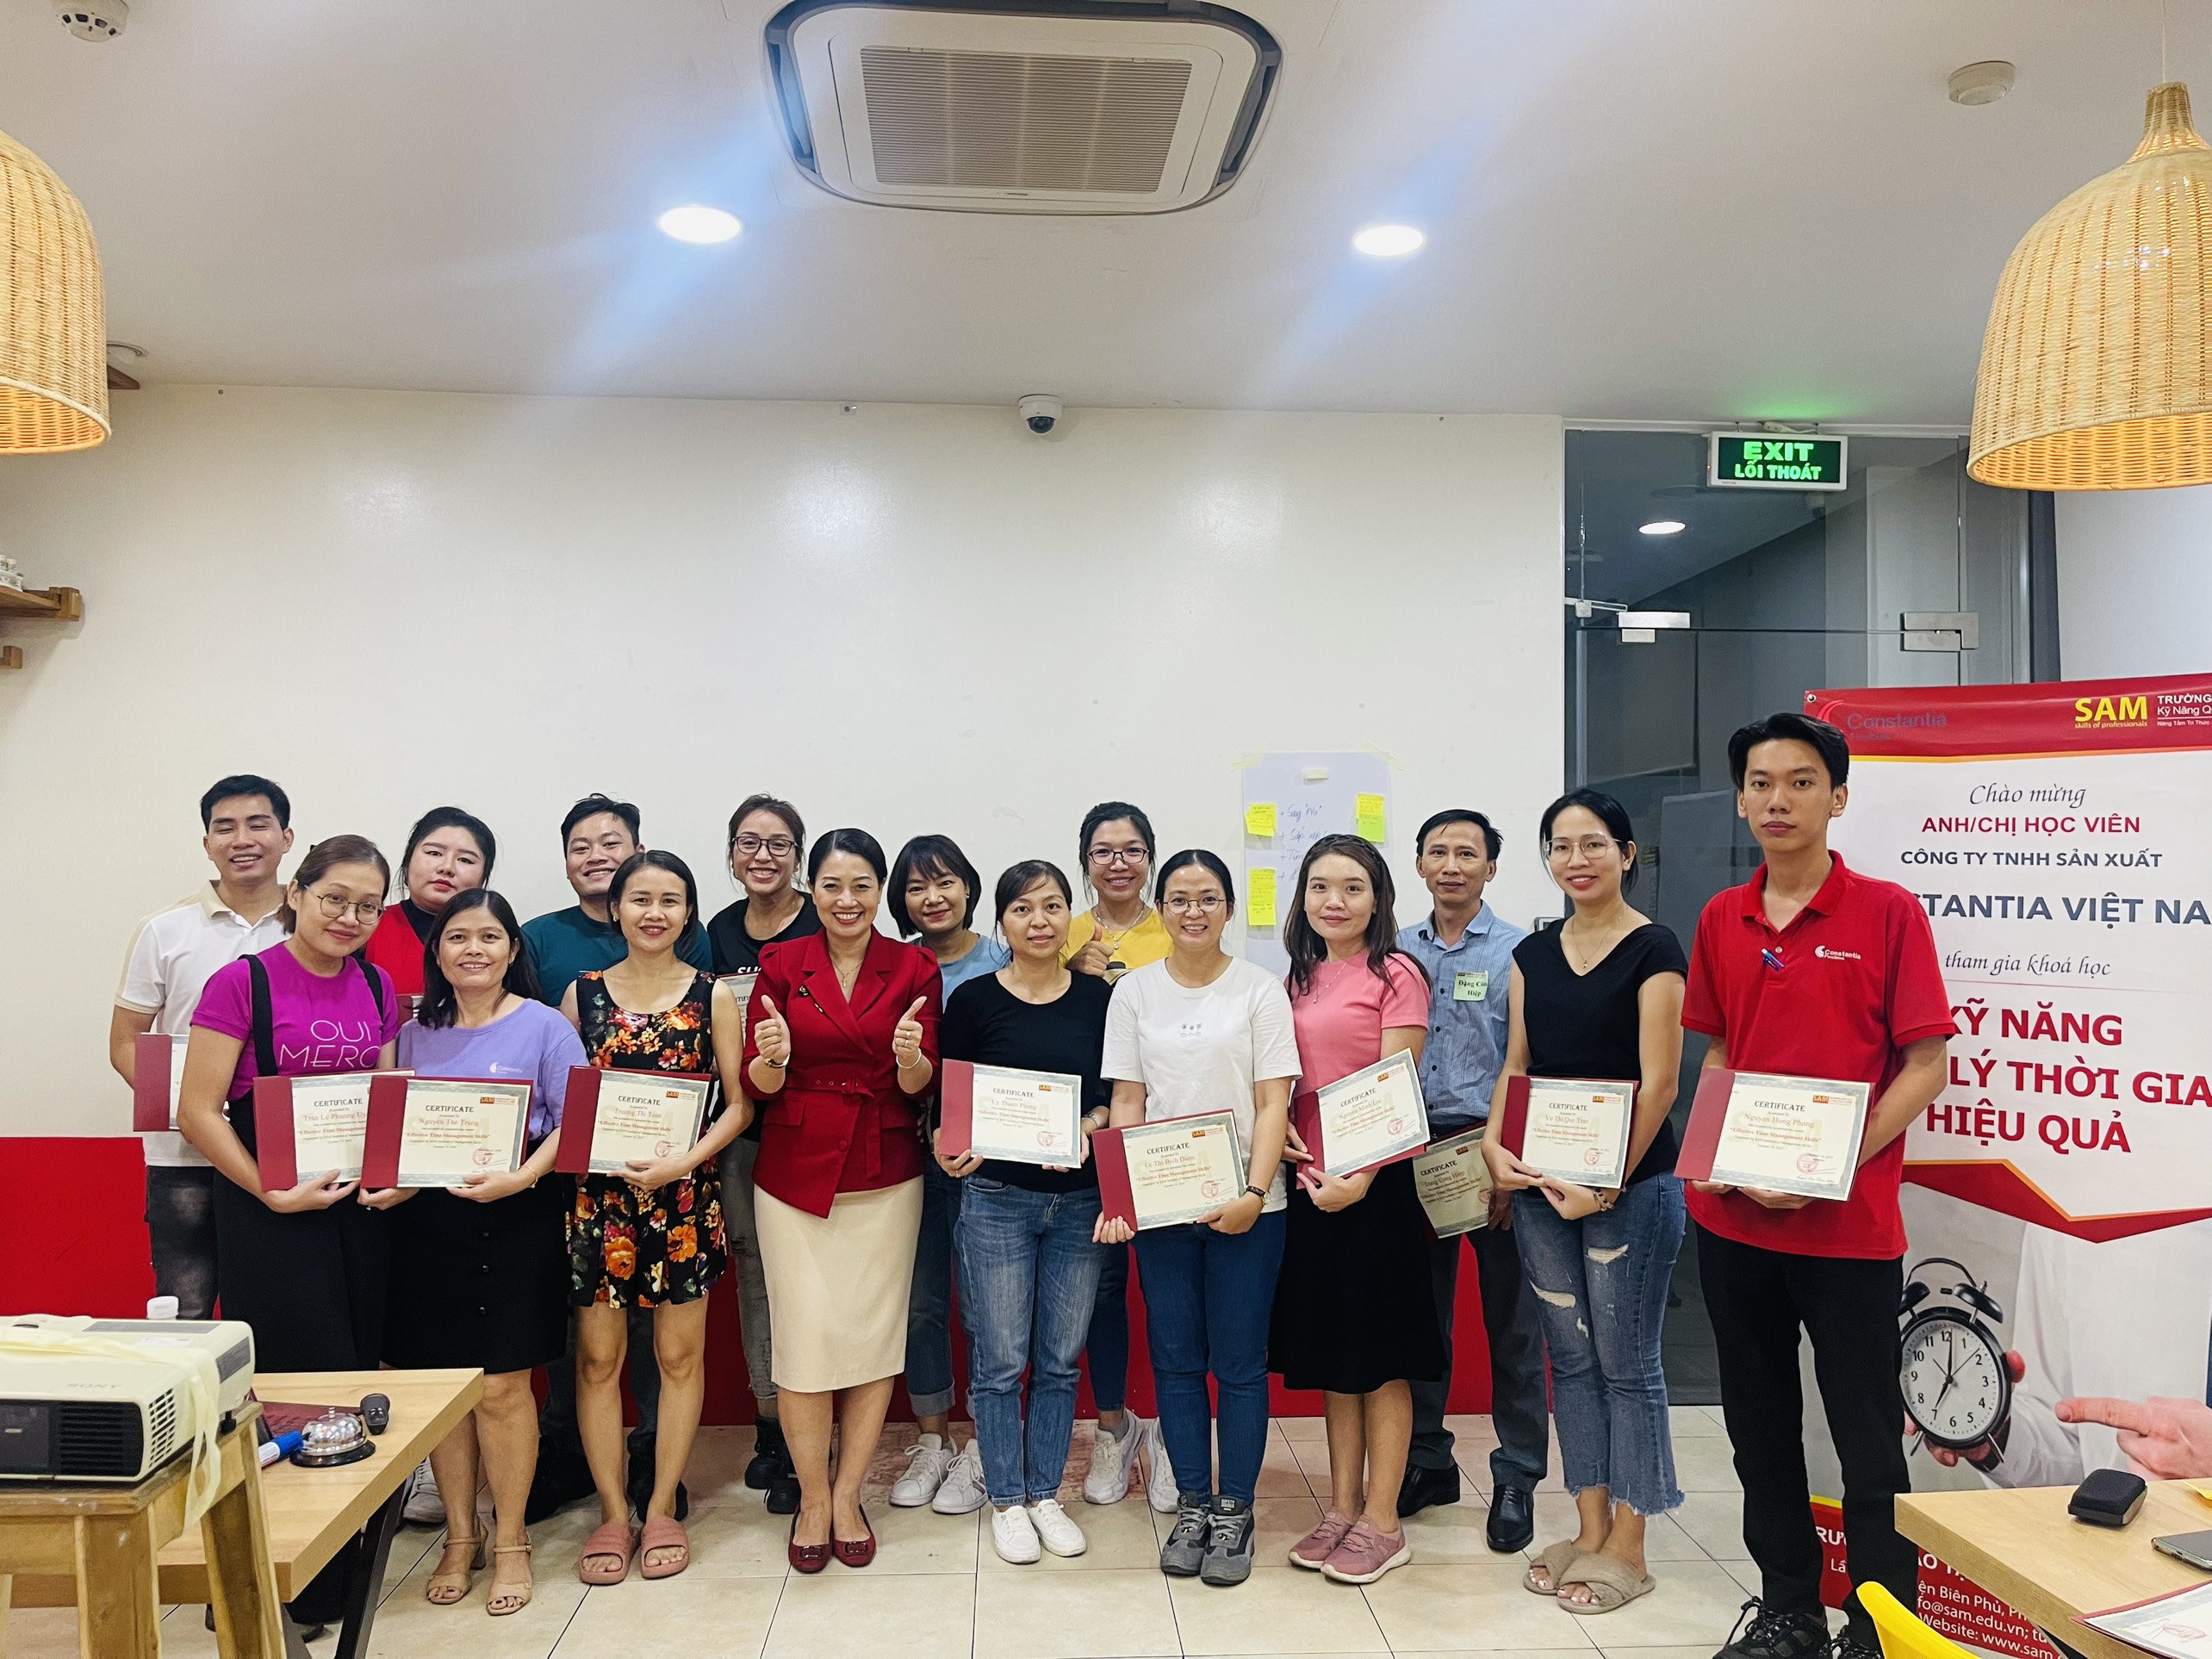 Chương trình đào tạo: "Kỹ năng quản lý thời gian hiệu quả" tại Công ty TNHH Sản Xuất Constantia Việt Nam